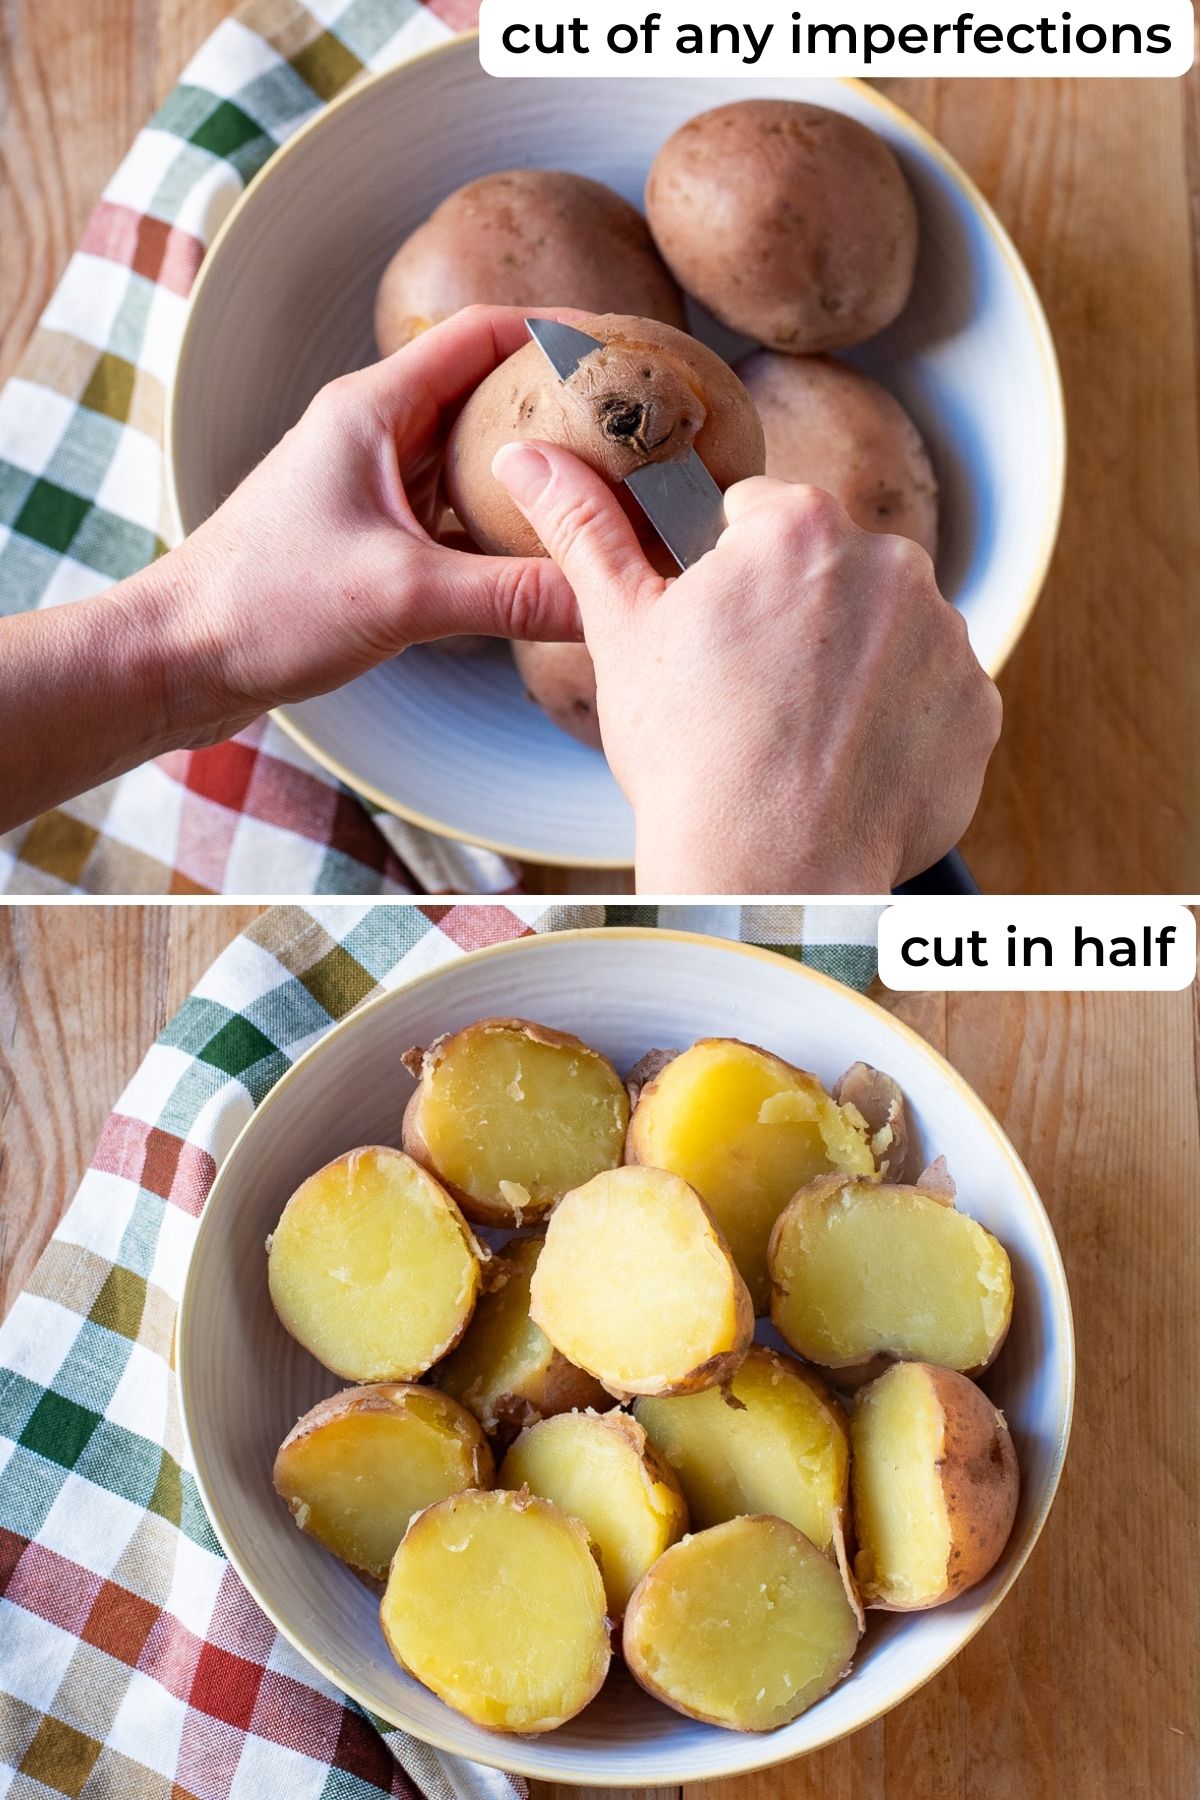 Preparing potatoes for gnocchi.